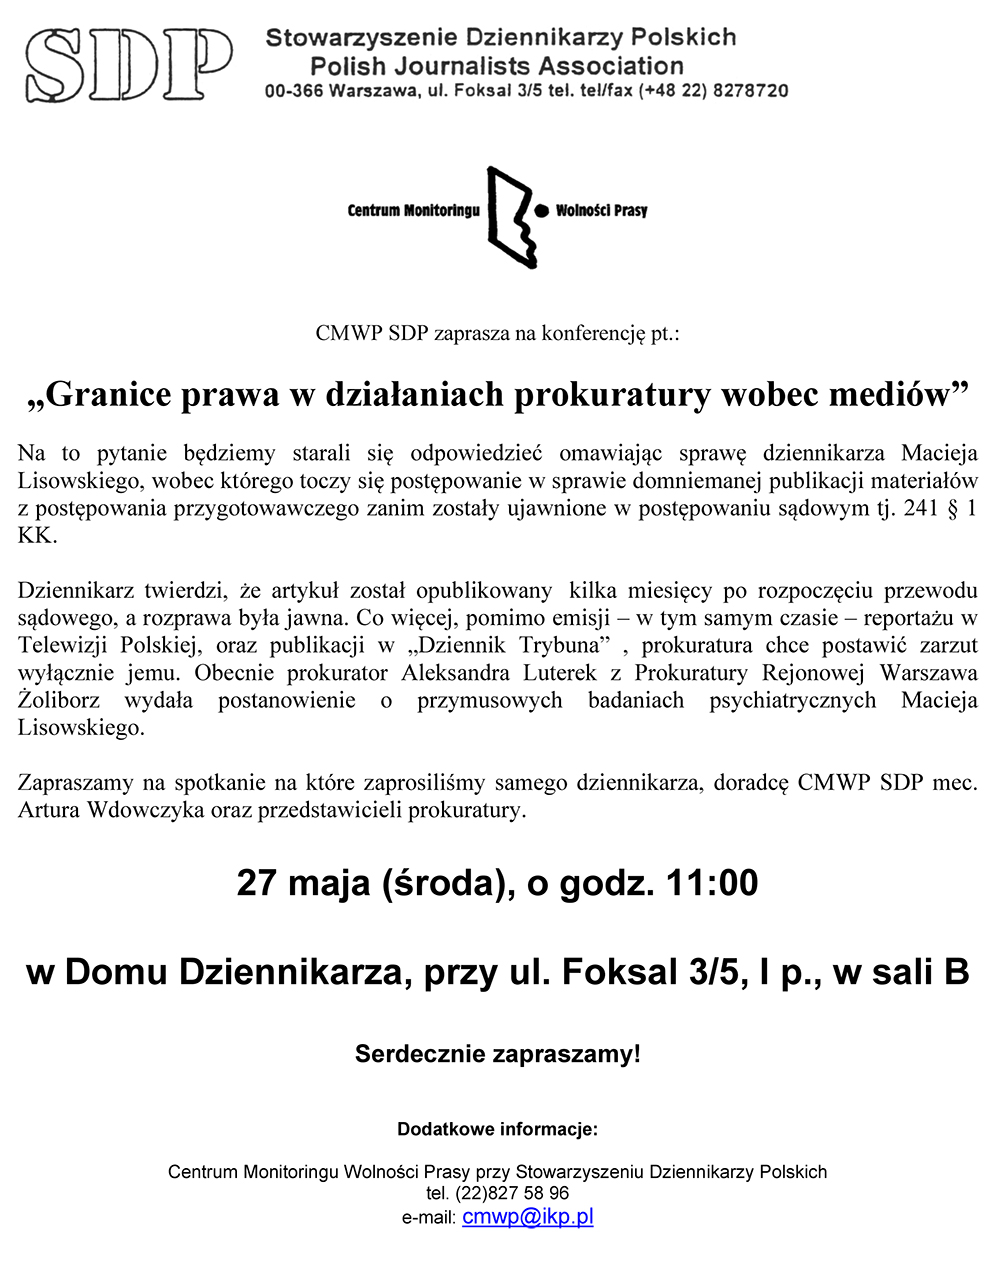 Microsoft Word - Zaproszenie - 27 05 15.doc